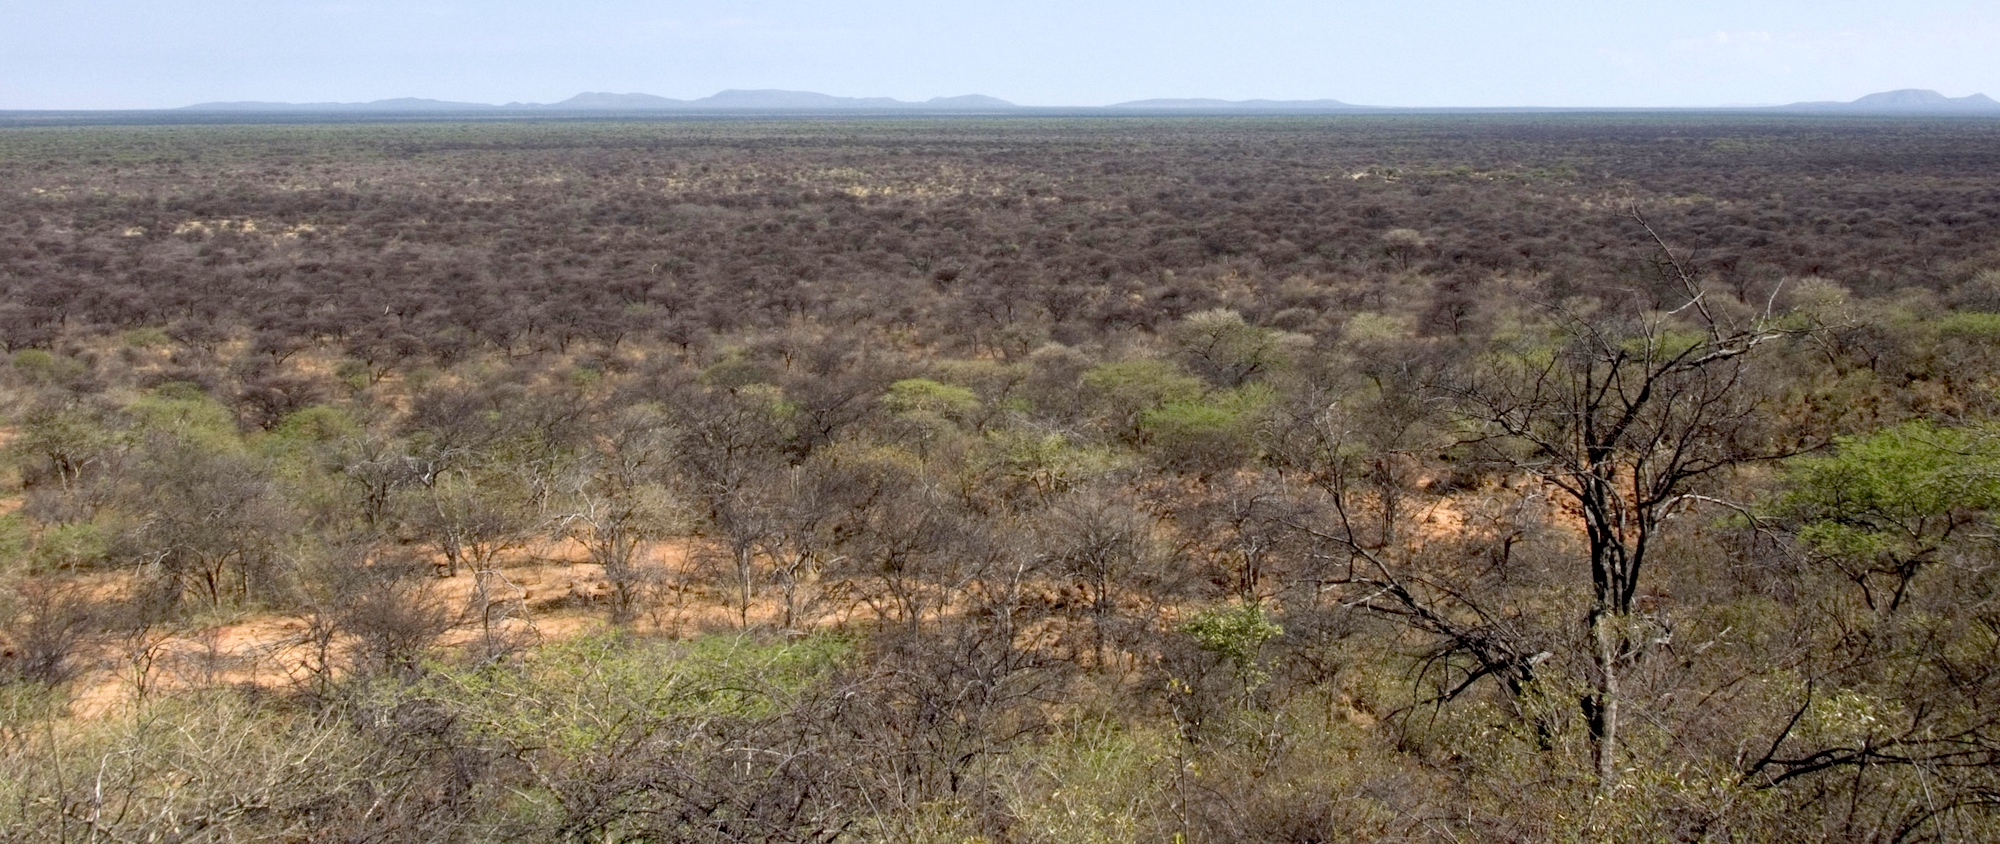 Bush choked landscape near Otjiwarongo